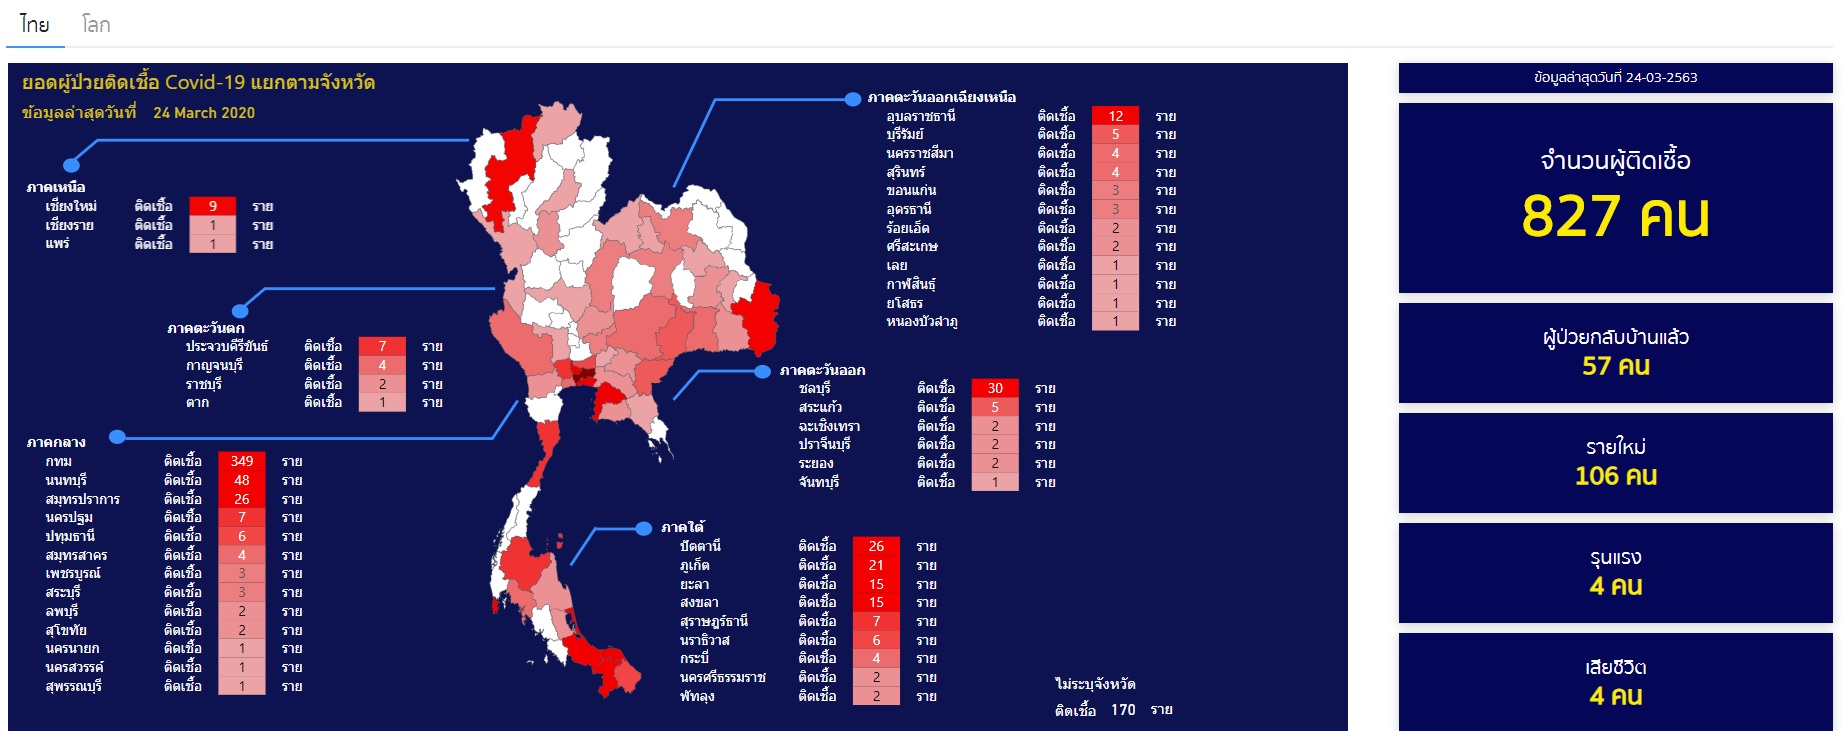 รัฐบาลไทยเปิดตัวเว็บไซต์ติดตามสถานการณ์ Covid-19 พร้อมชี้เป้าที่จำหน่ายหน้ากาก และเจลล้างมือ!